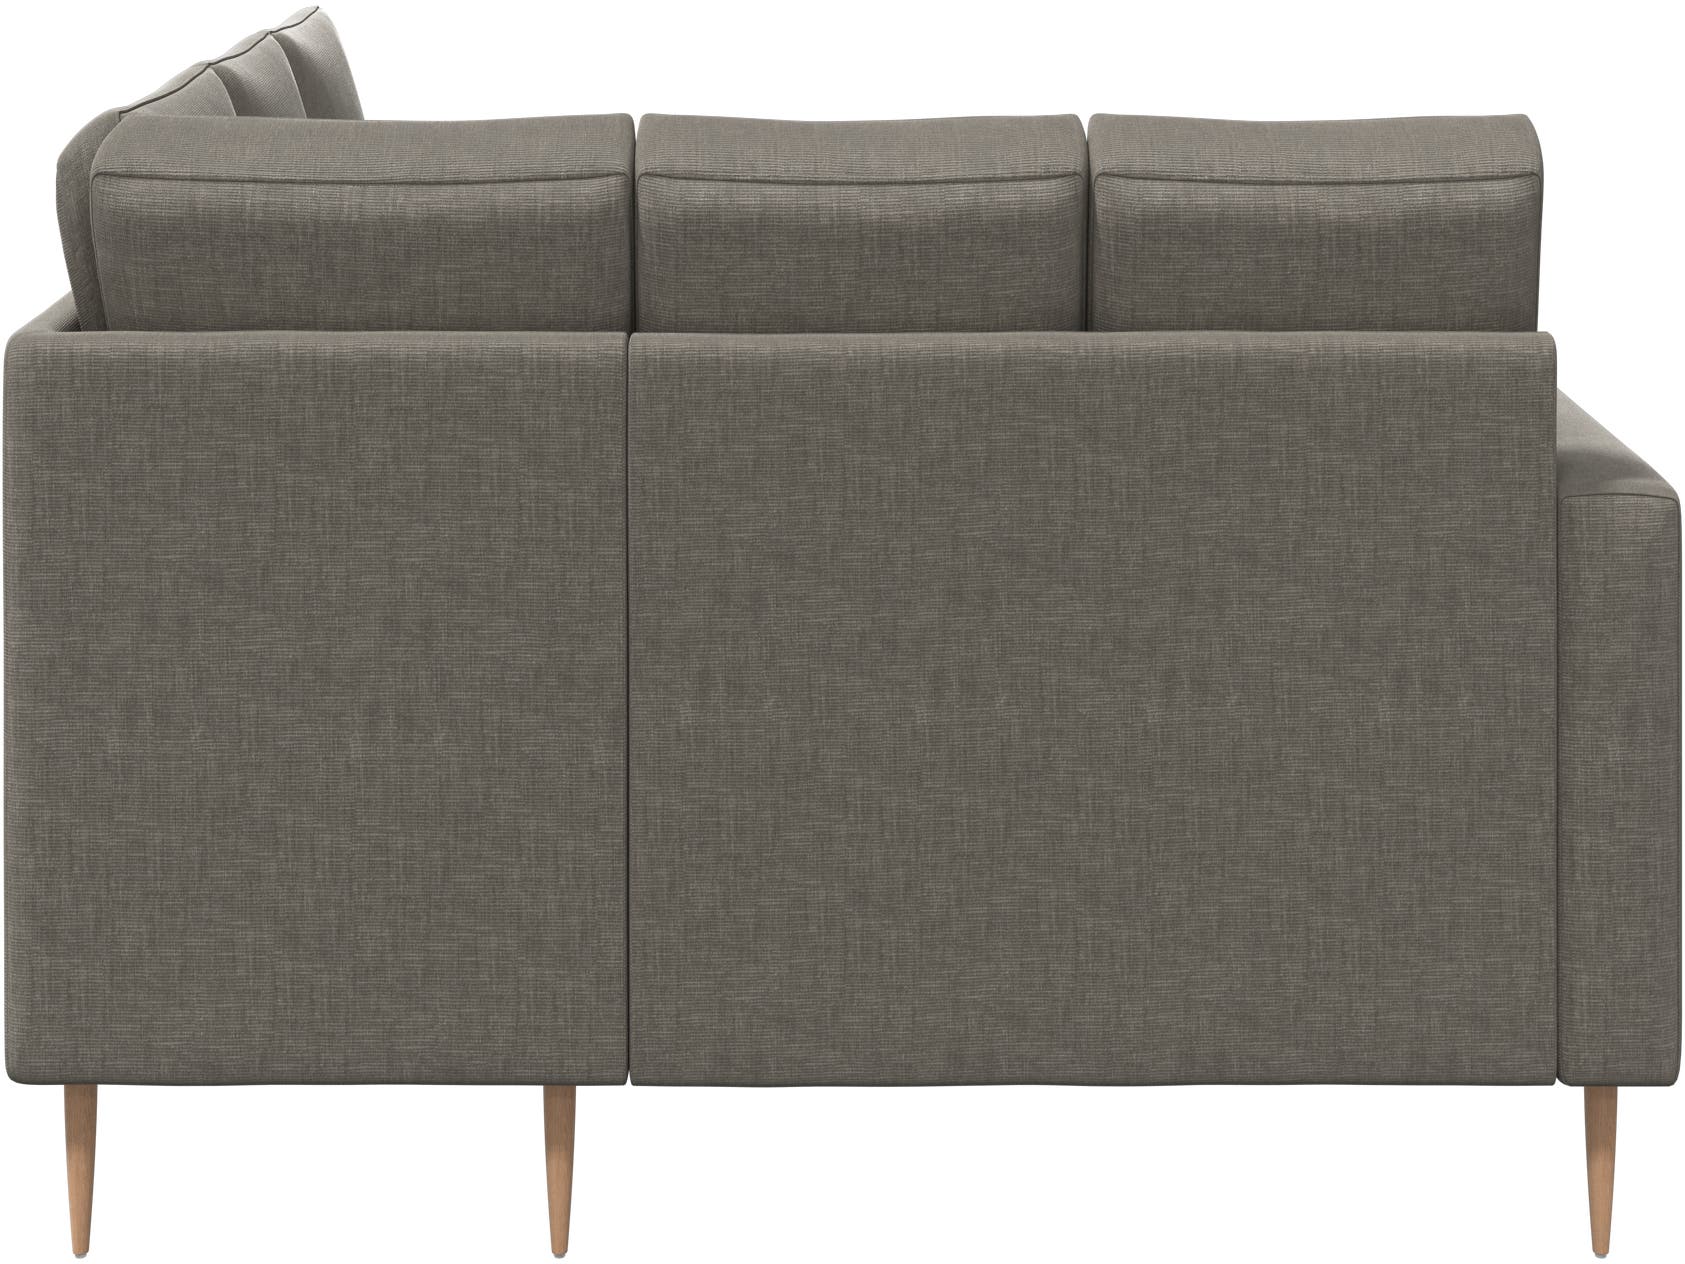 Indivi corner sofa | BoConcept